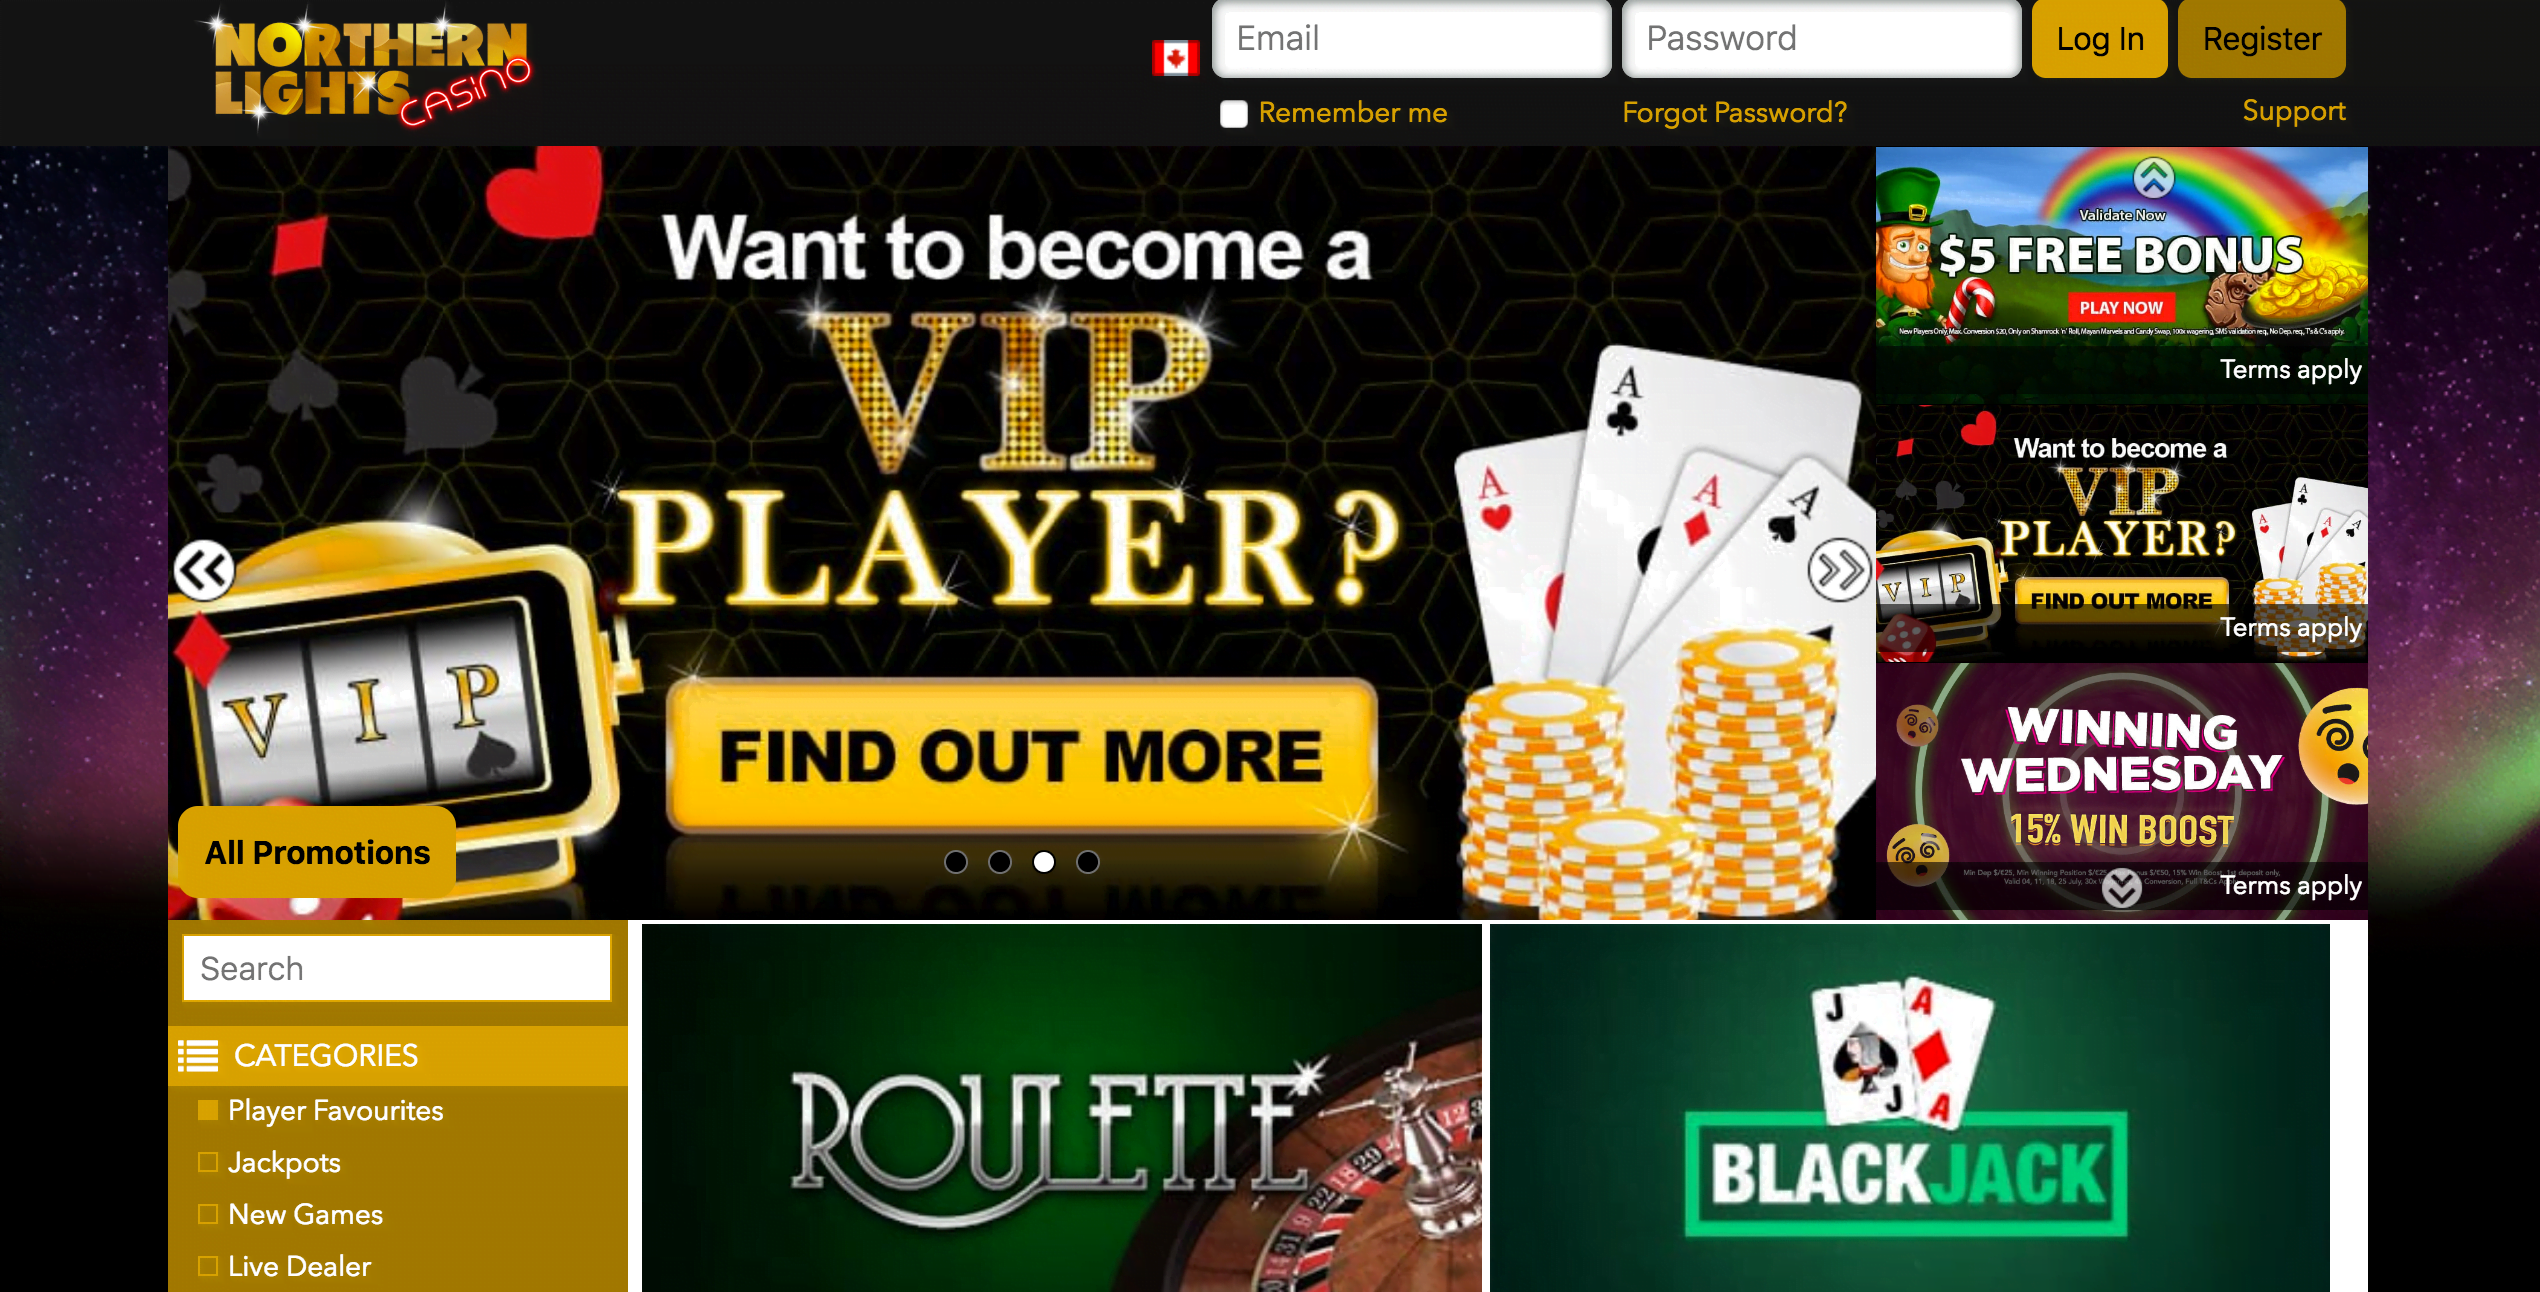 neue online casinos no deposit bonus